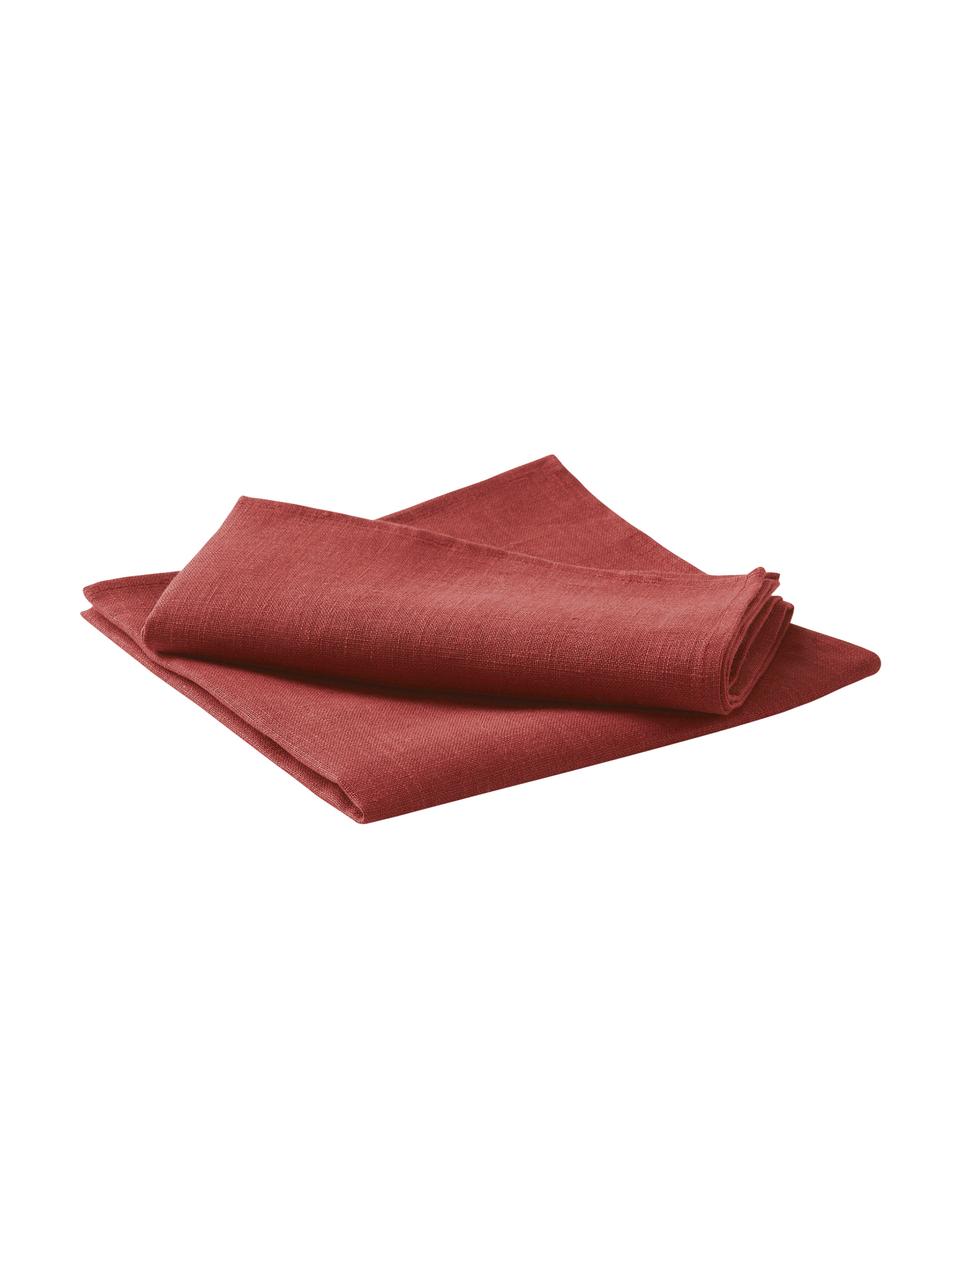 Leinen-Servietten Heddie, 2 Stück, 100% Leinen, Rot, 45 x 45 cm